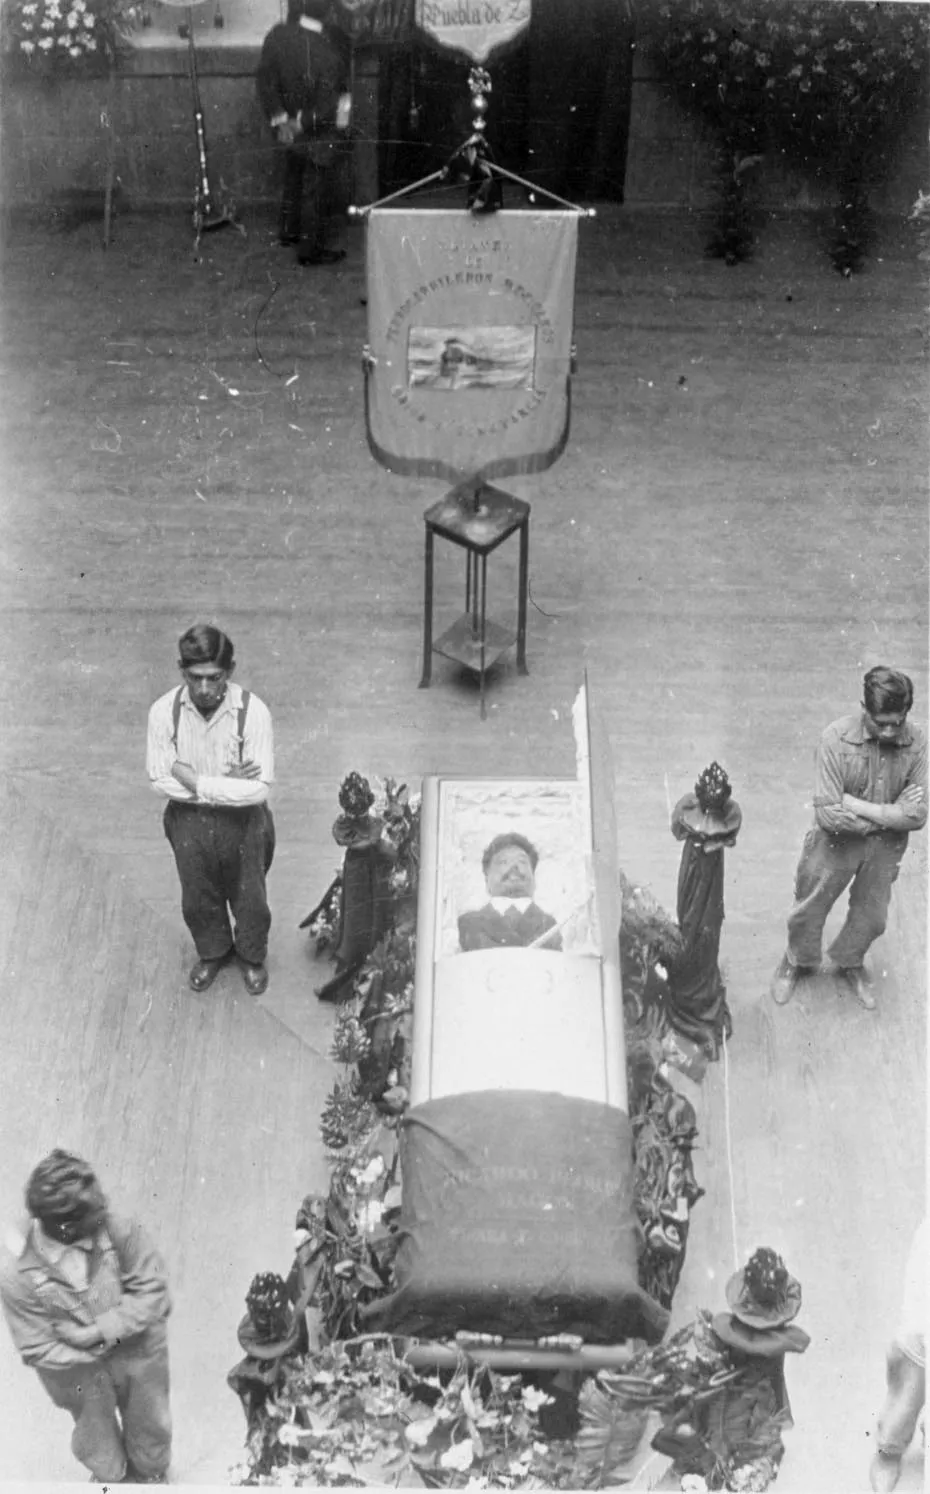 Retrato de cuerpo presente. (15 de enero de 1923). Sede Alianza Ferrocarrilera. Calle de Rosales, Ciudad de México. (Fototeca Nacional, INAH).